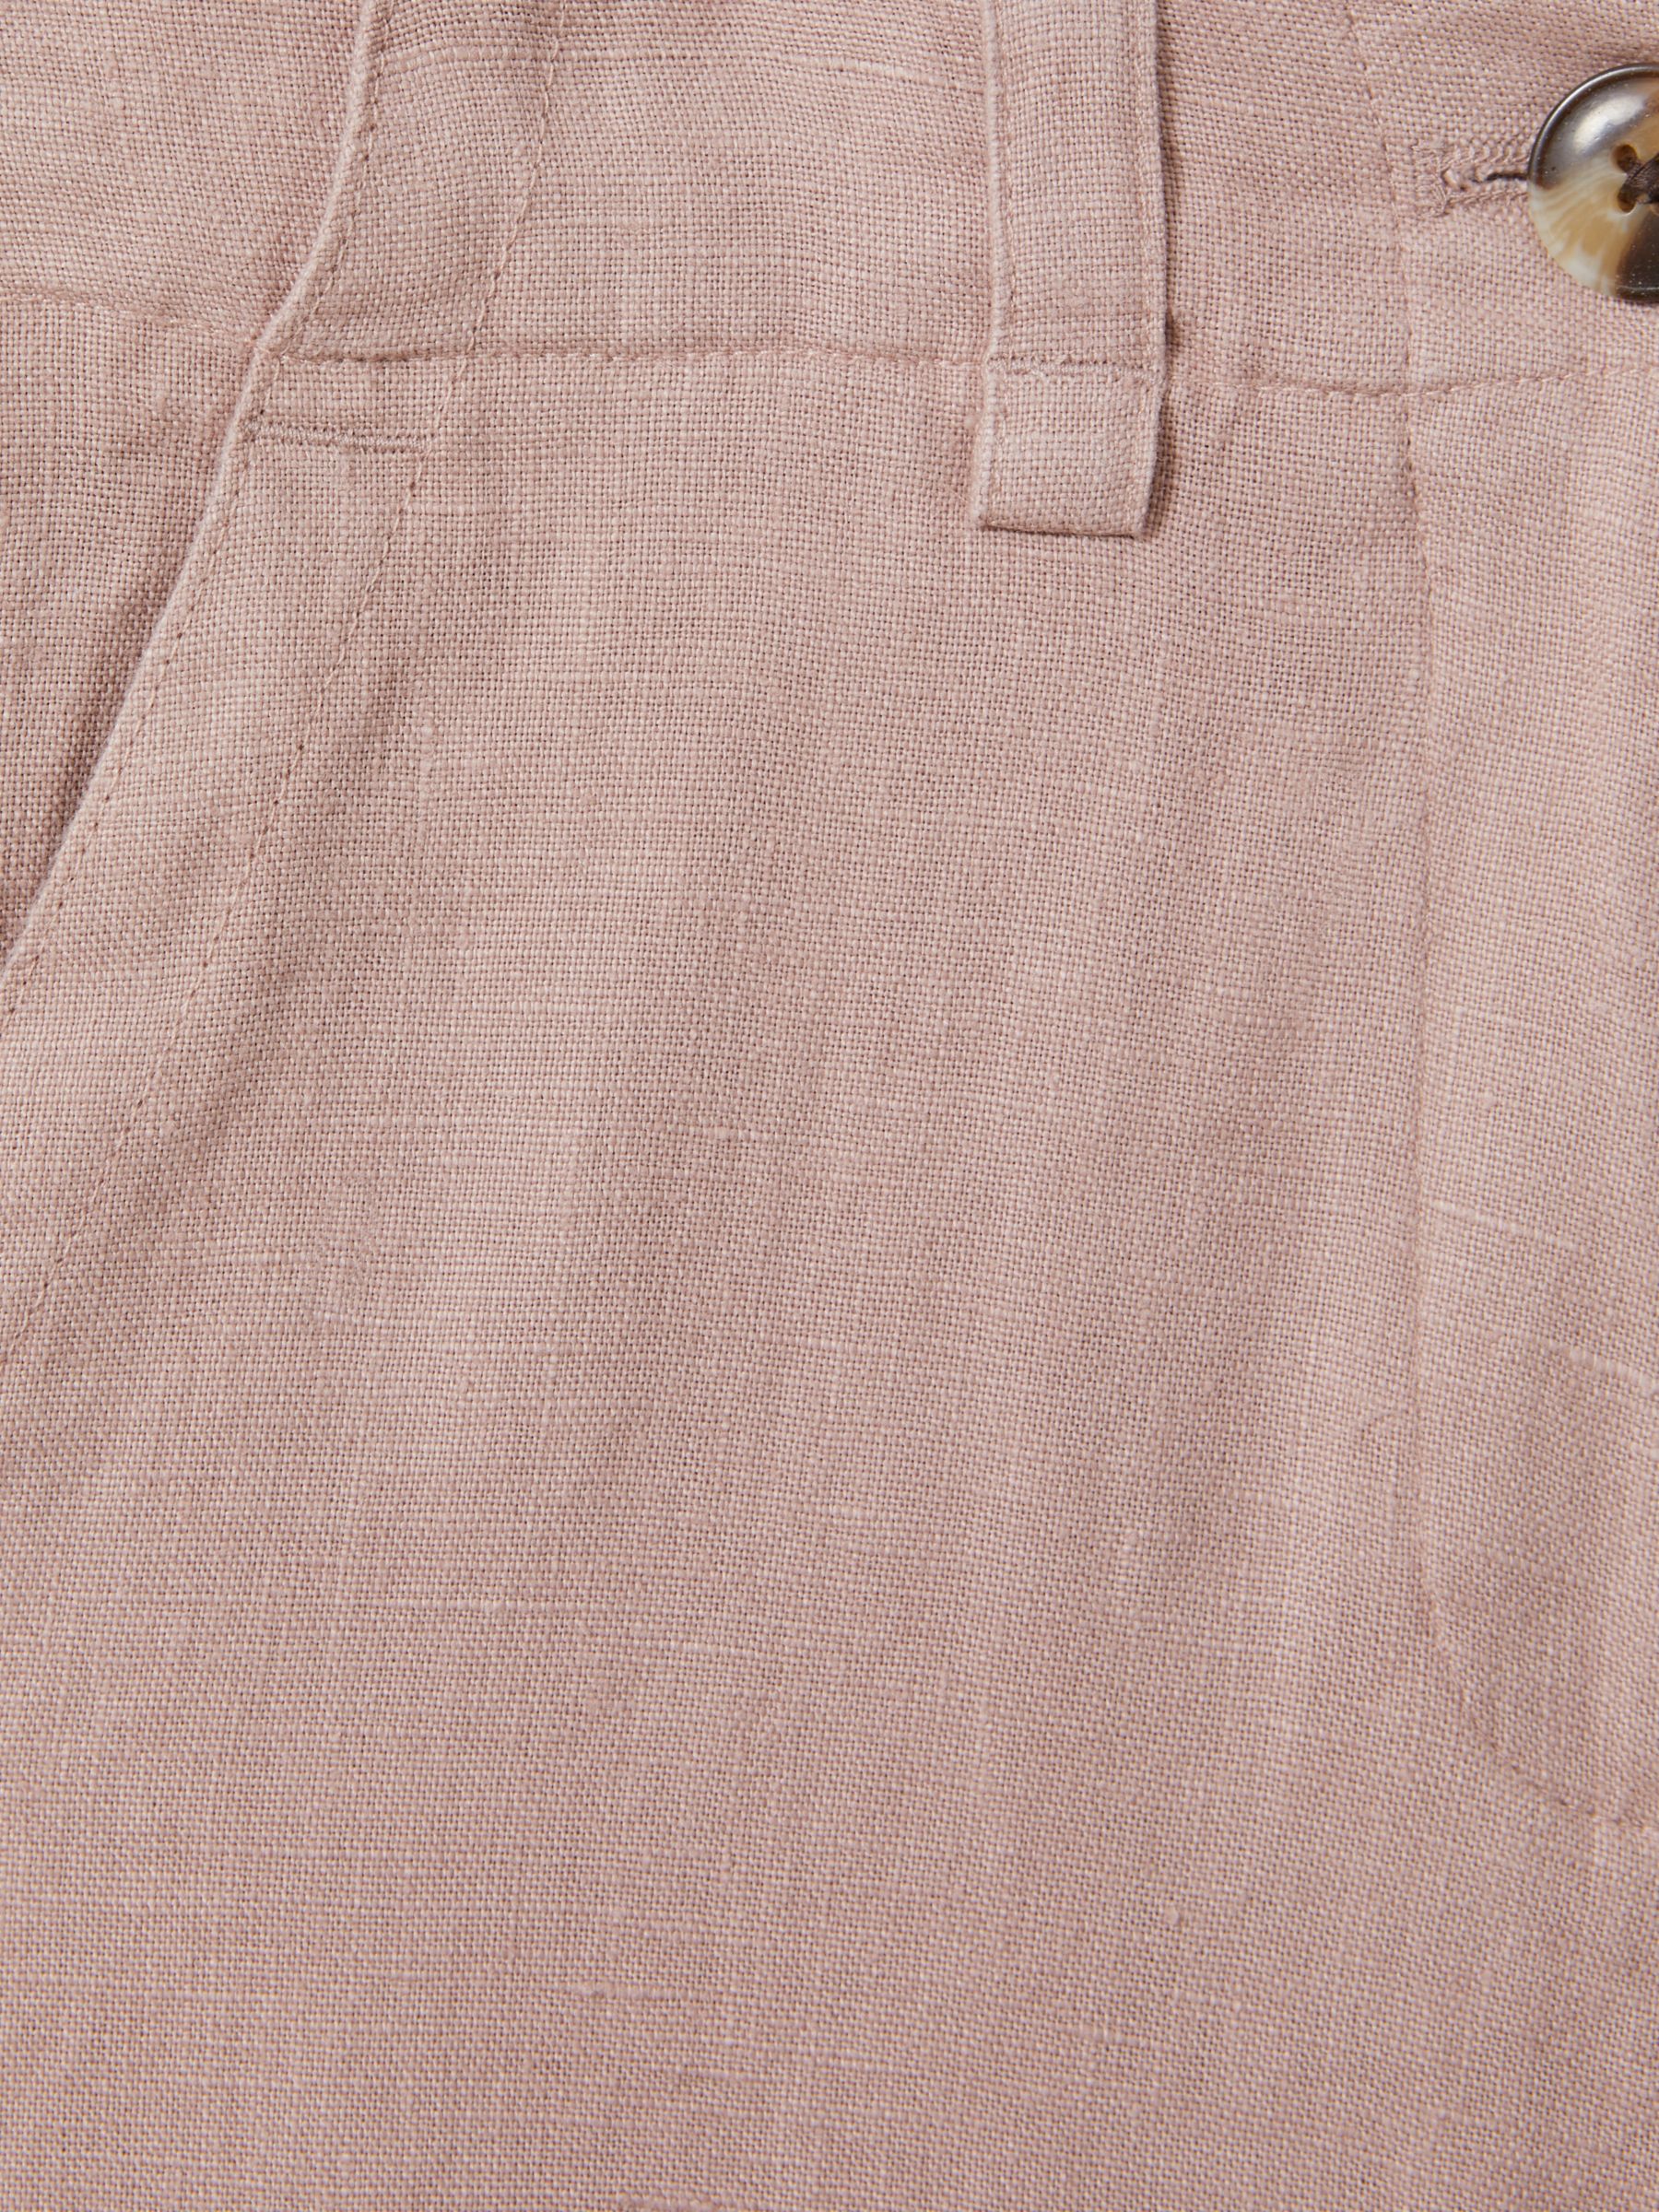 Reiss Kids' Dani Linen Trousers, Pink, 4-5 years